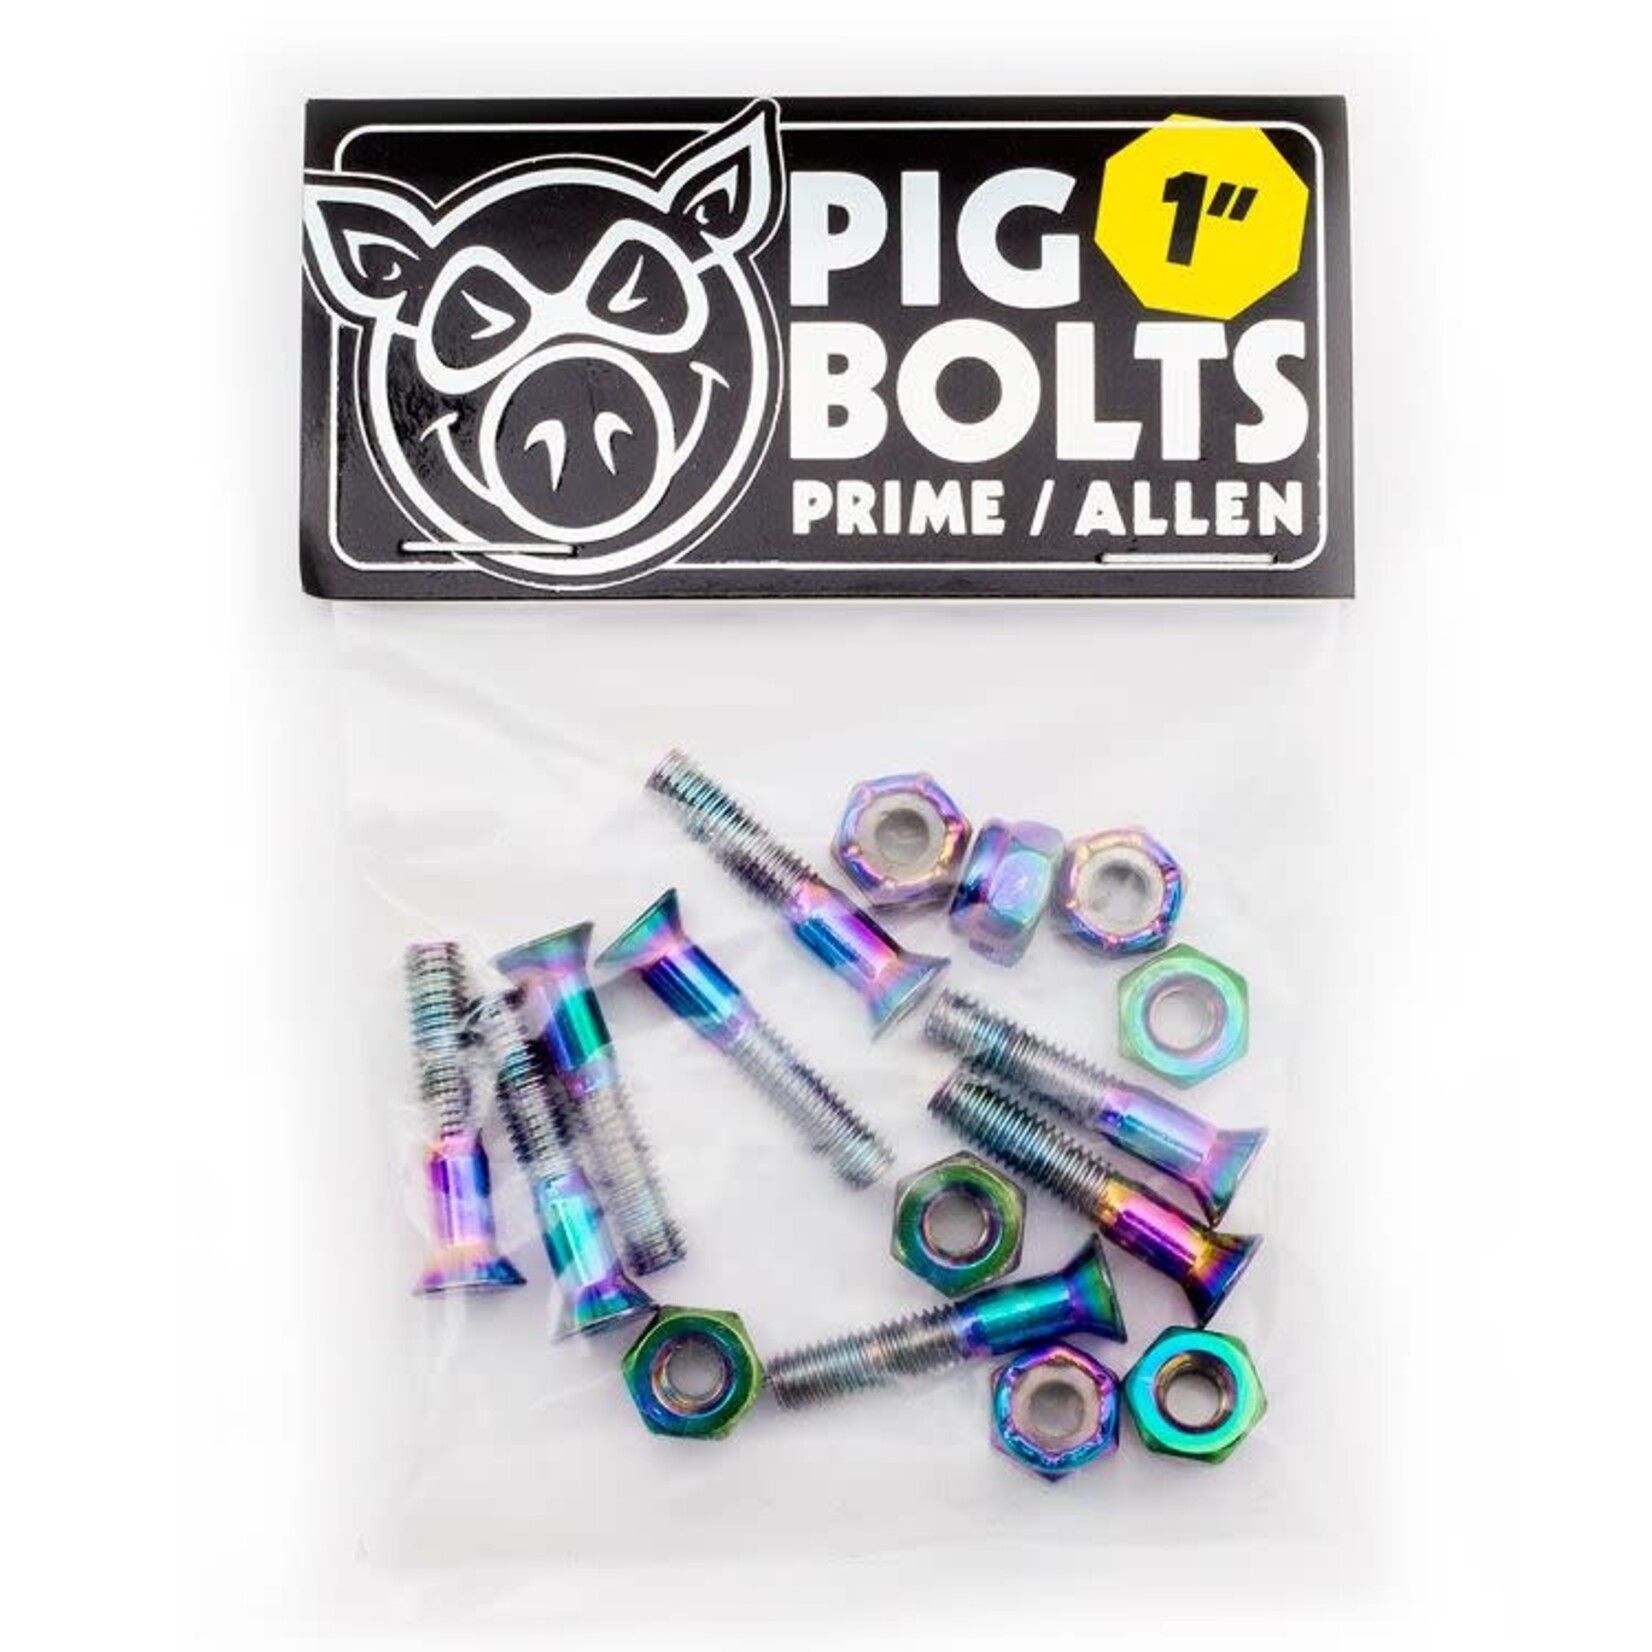 Pig Wheels Pig Bolts 1" Allen Hardware - Prime